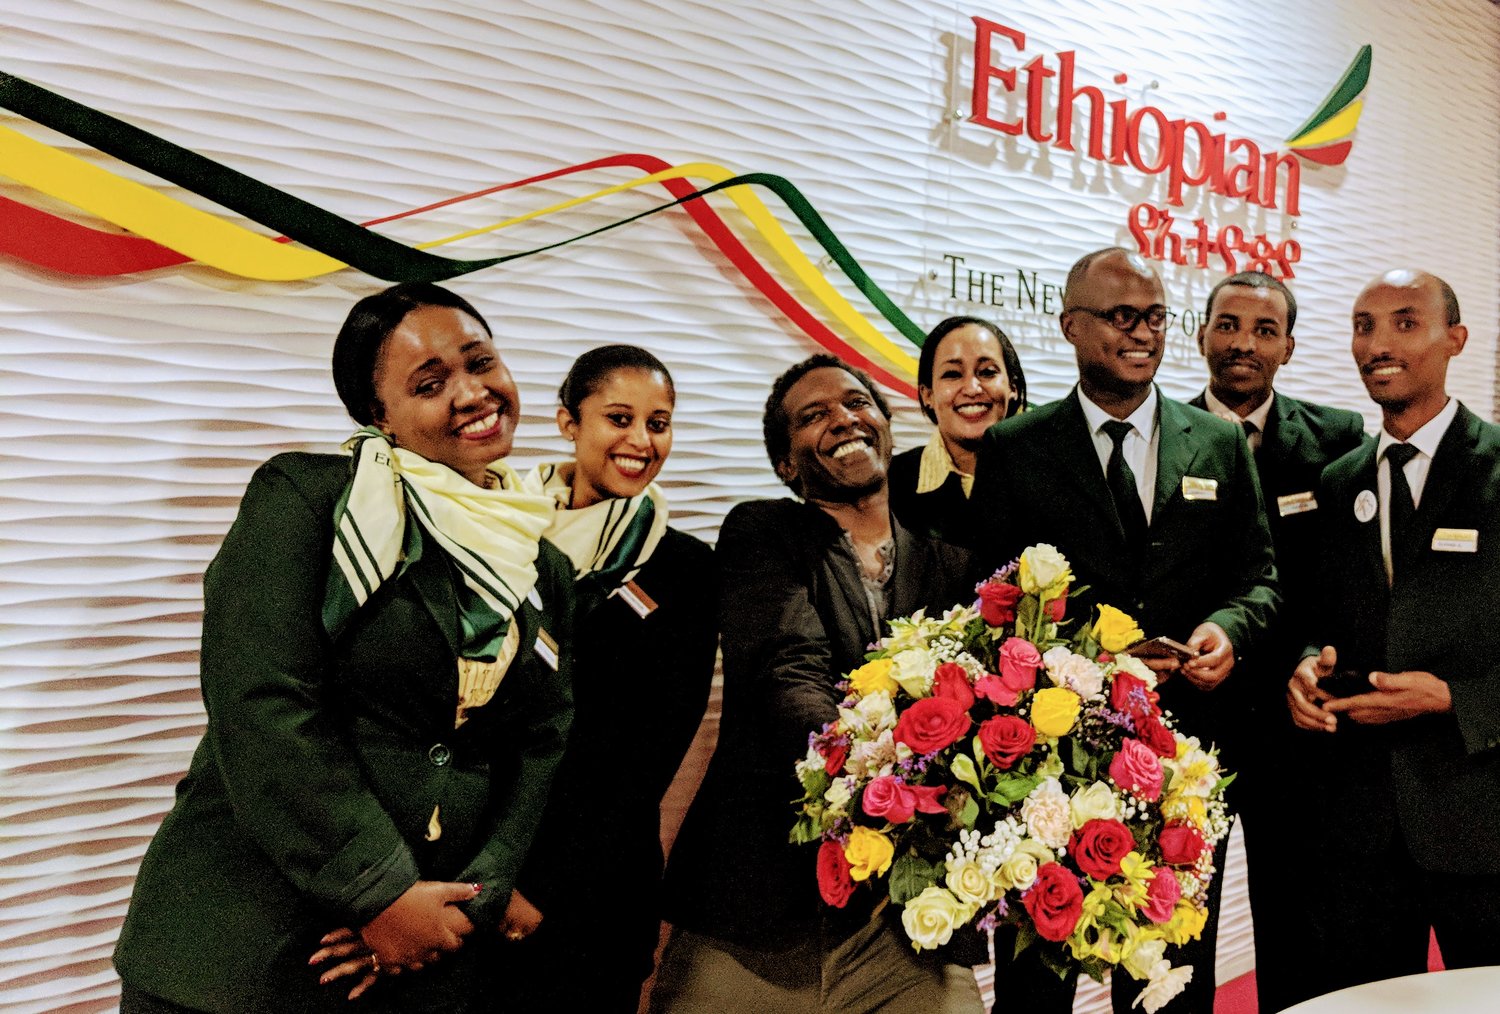 Image (c) Ethiopian Airlines